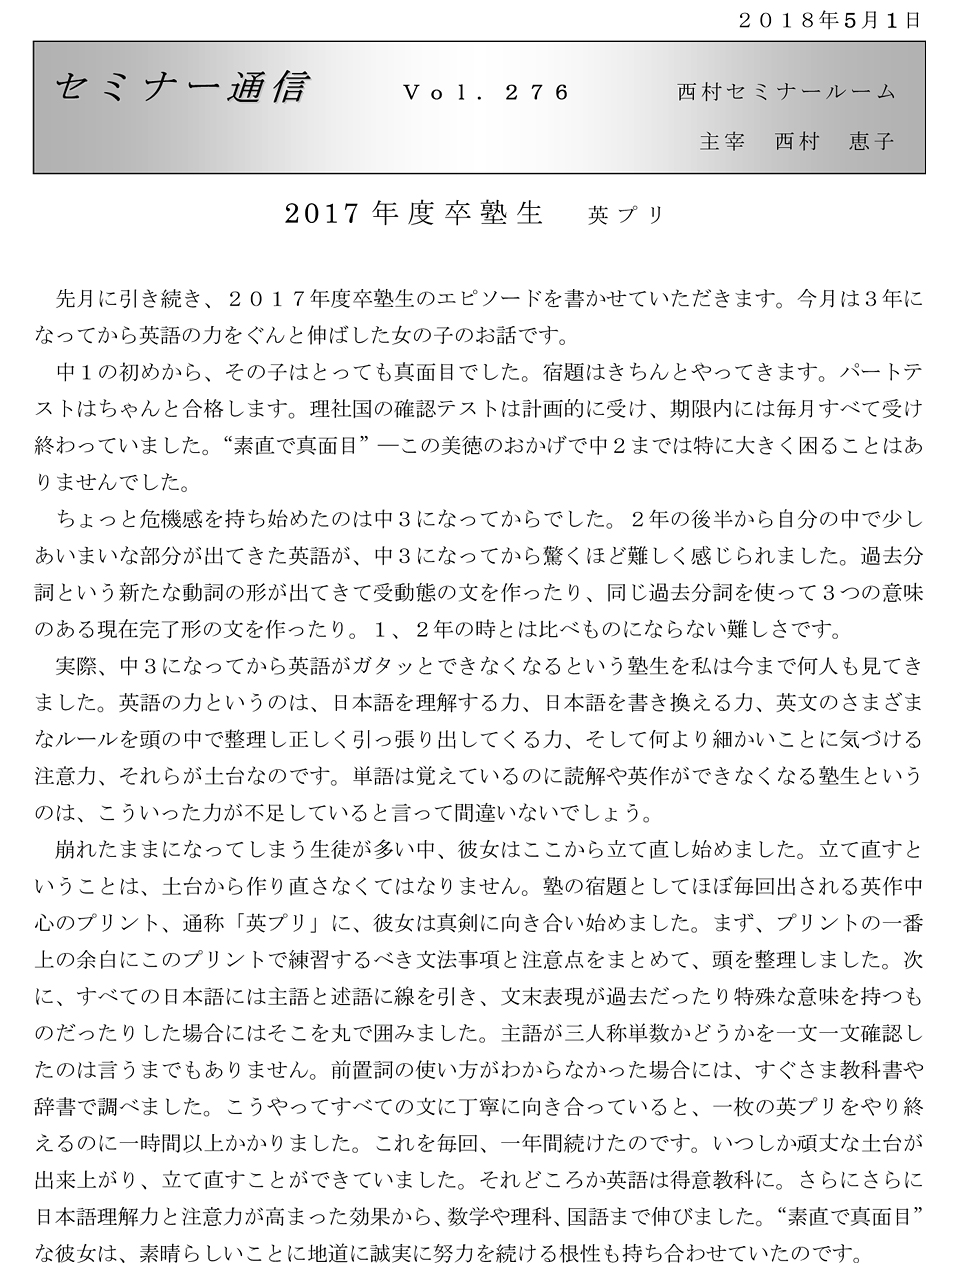 セミナー通信276号「2017年度卒塾生 英プリ」